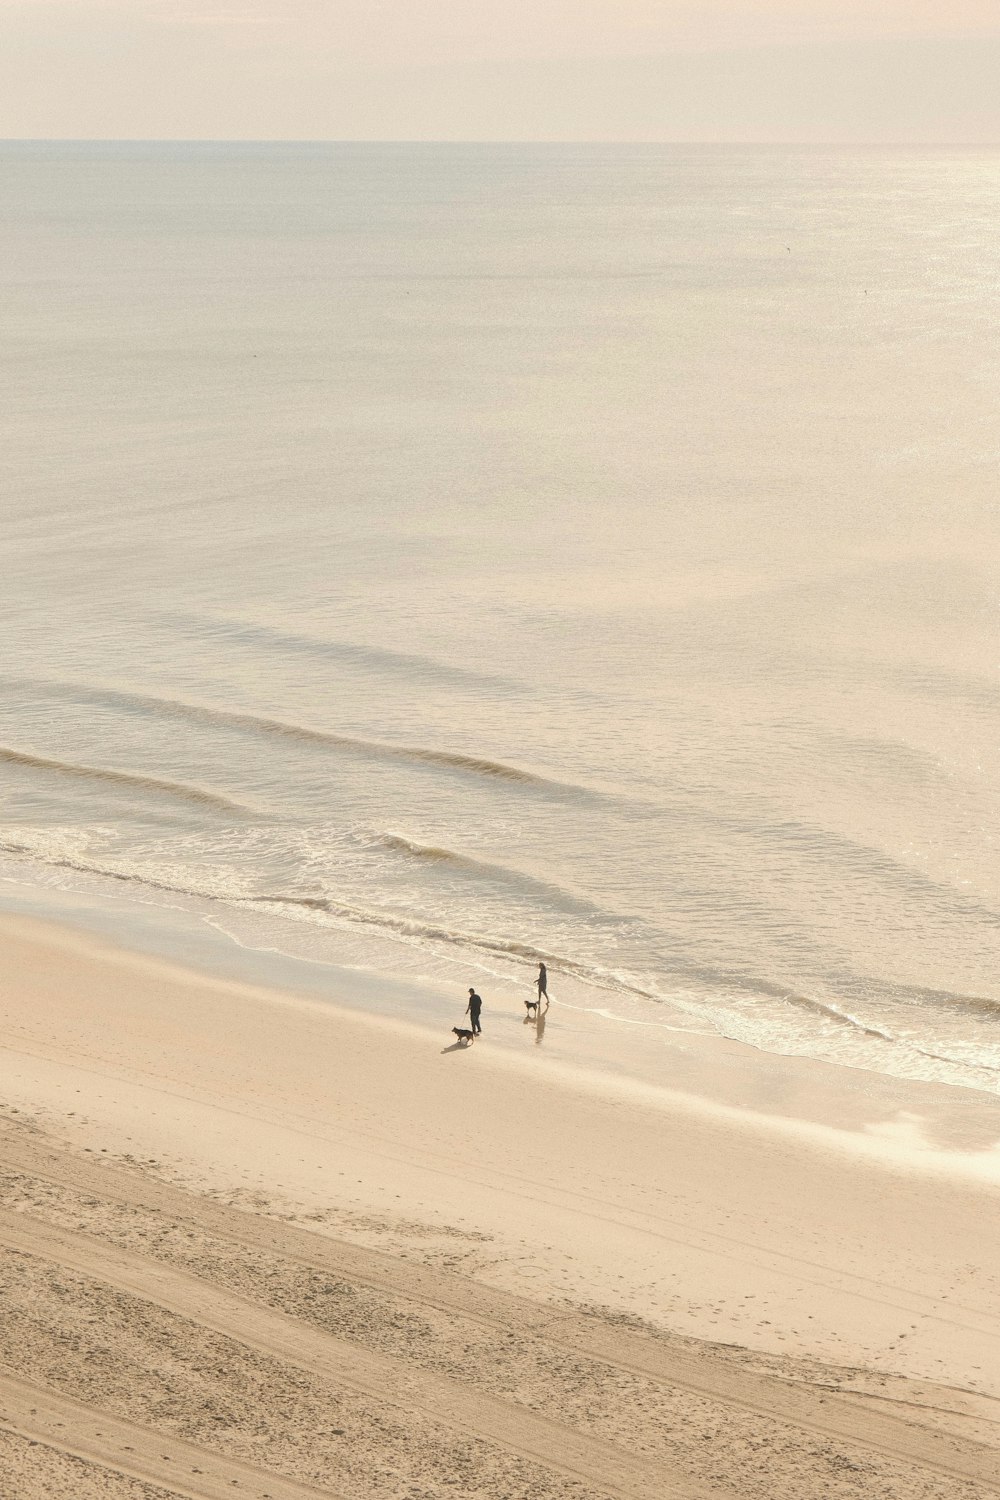 모래 위에 서 있는 두 사람